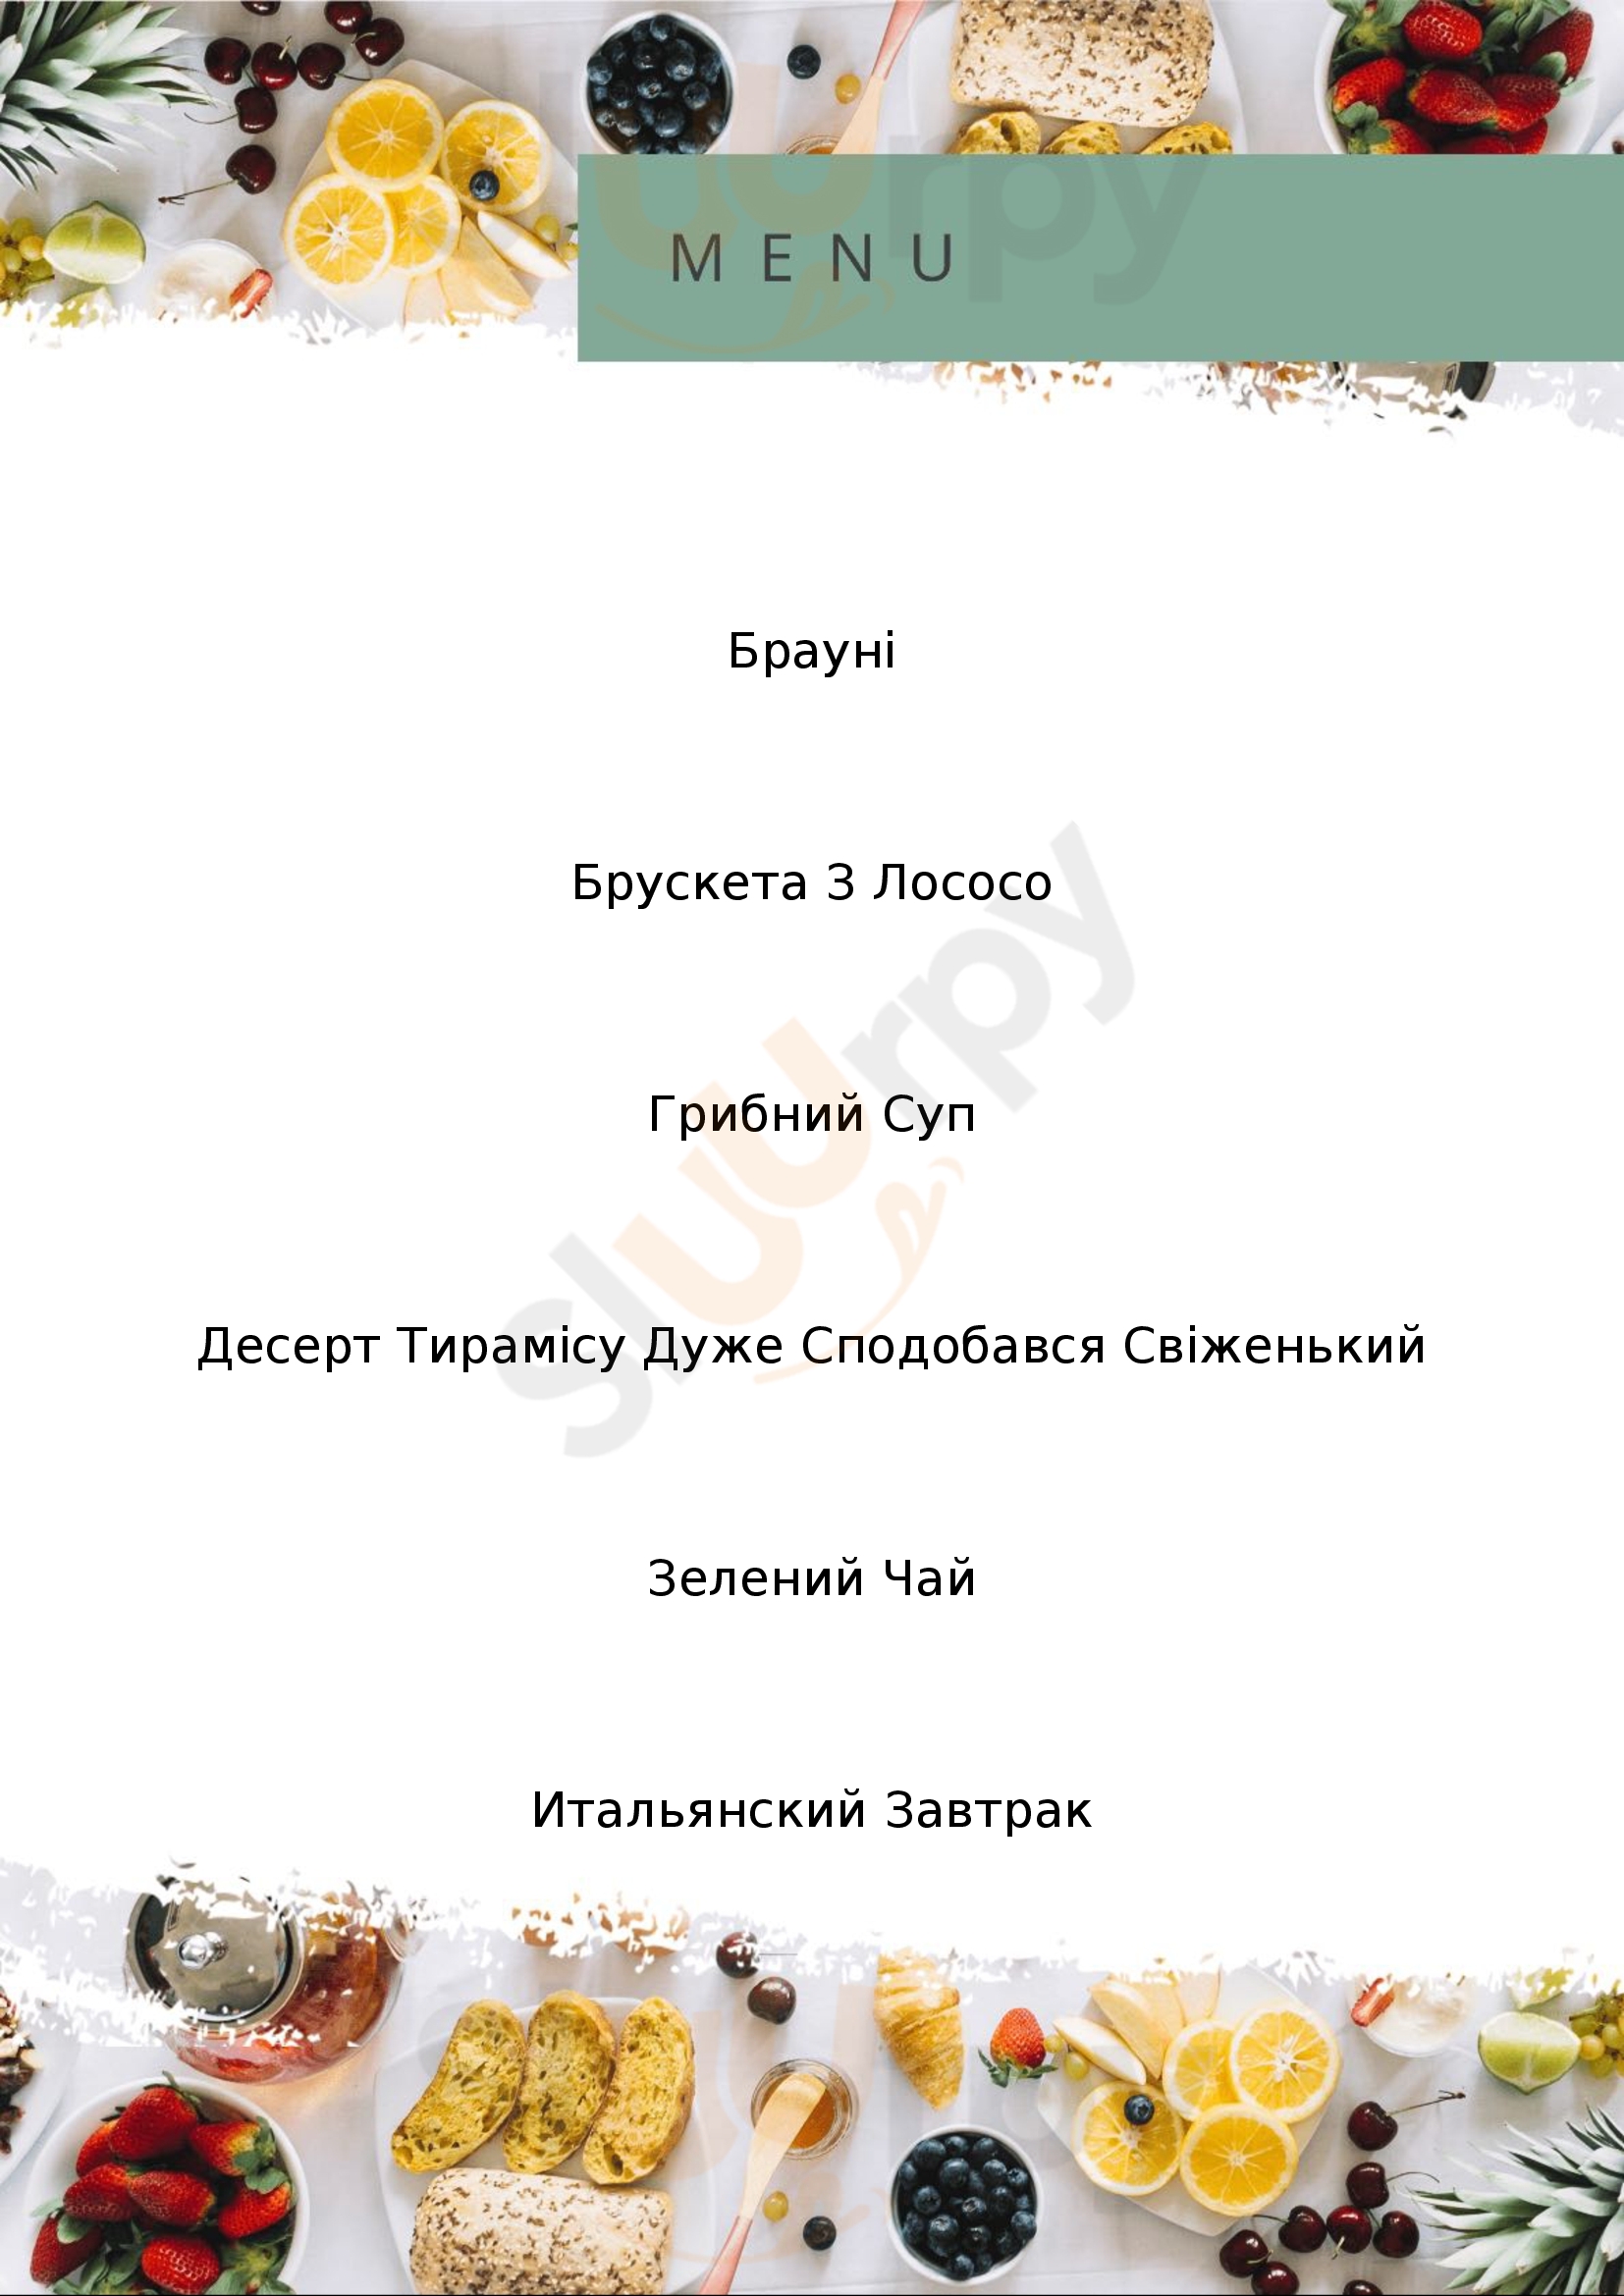 Pesto Cafe Kyiv Menu - 1